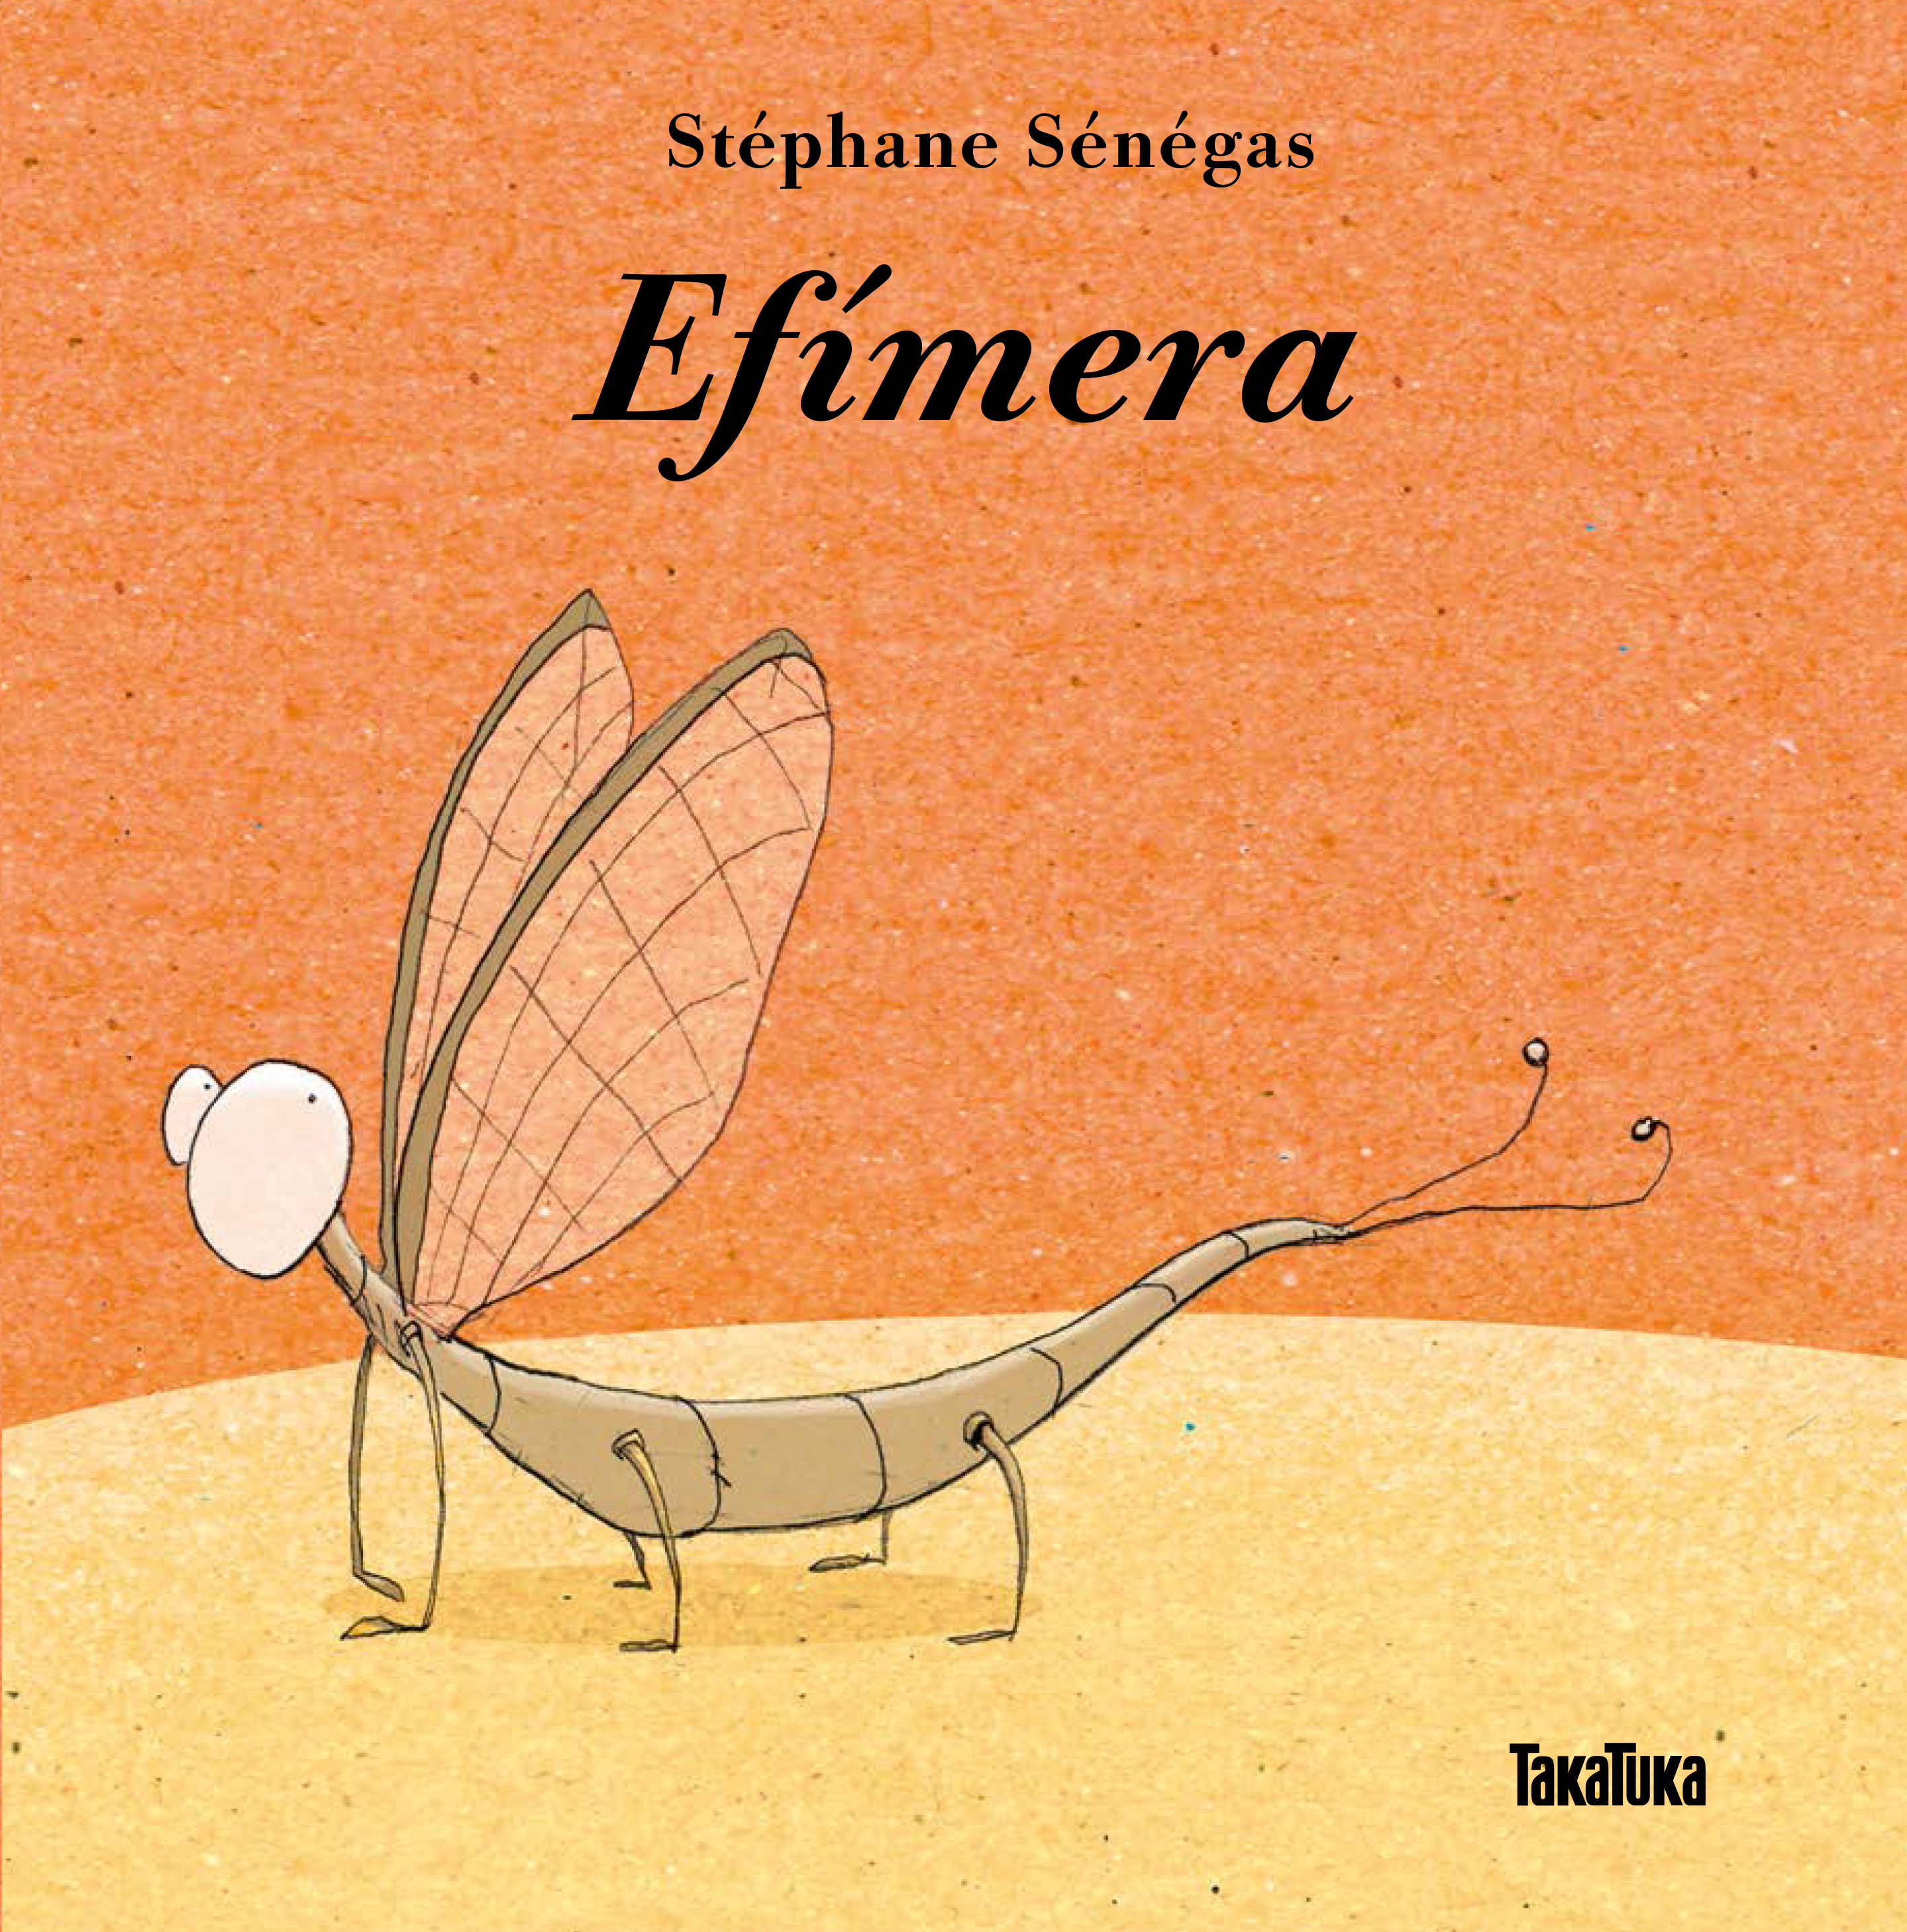 Efímera - Stéphane Sénégas